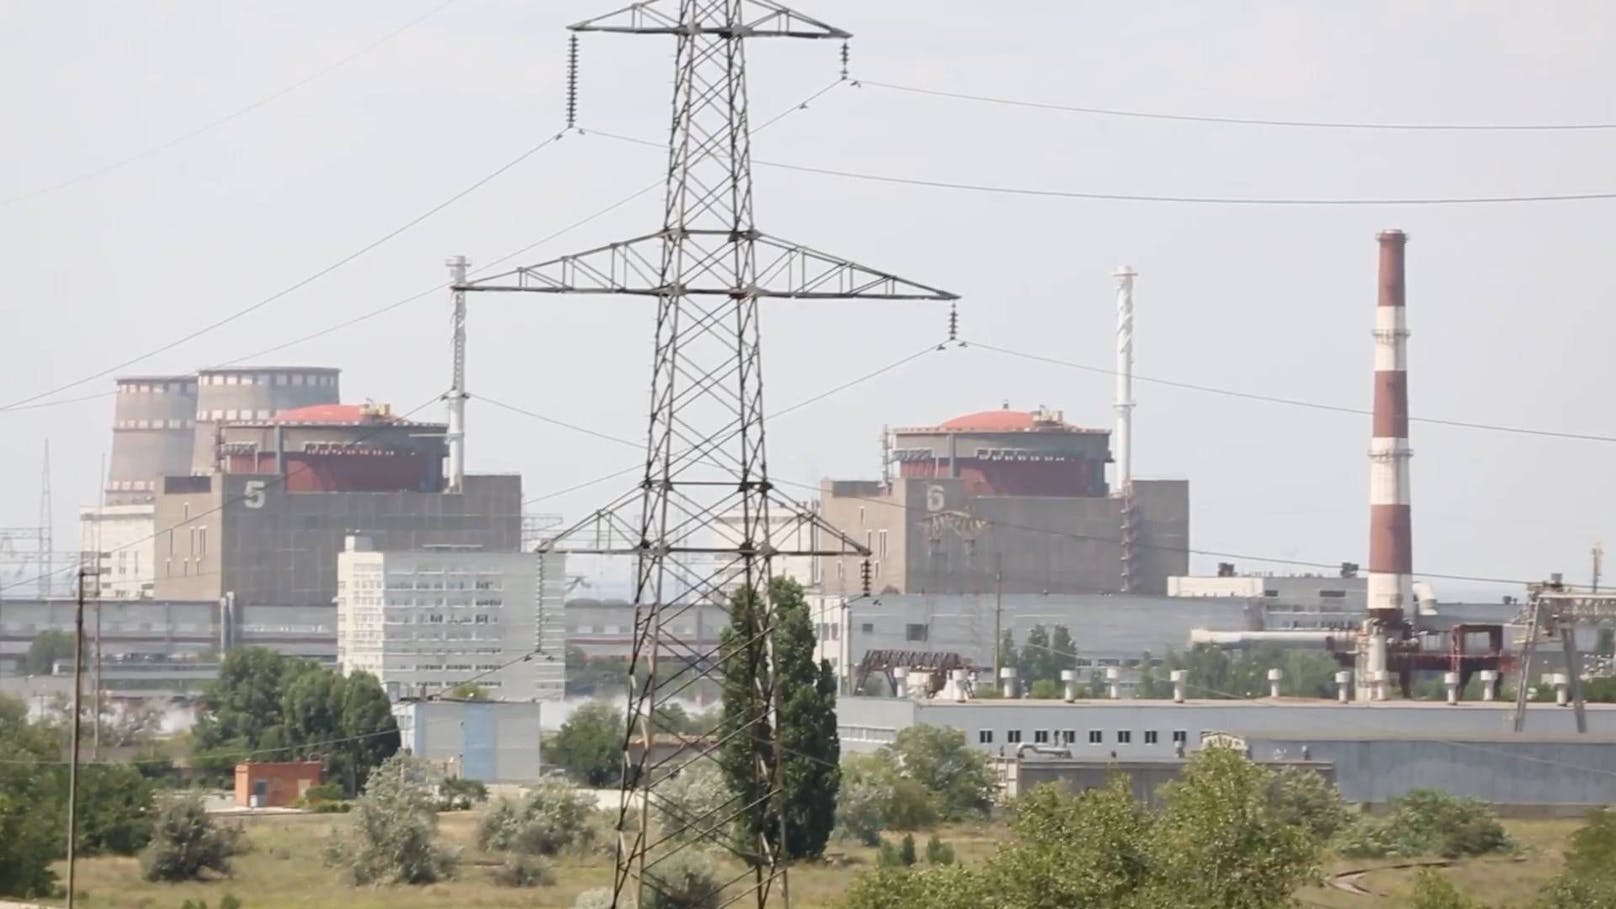 Der Reaktor baue Kapazität auf, teilte der ukrainische Staatskonzern Energoatom zuletzt mit.